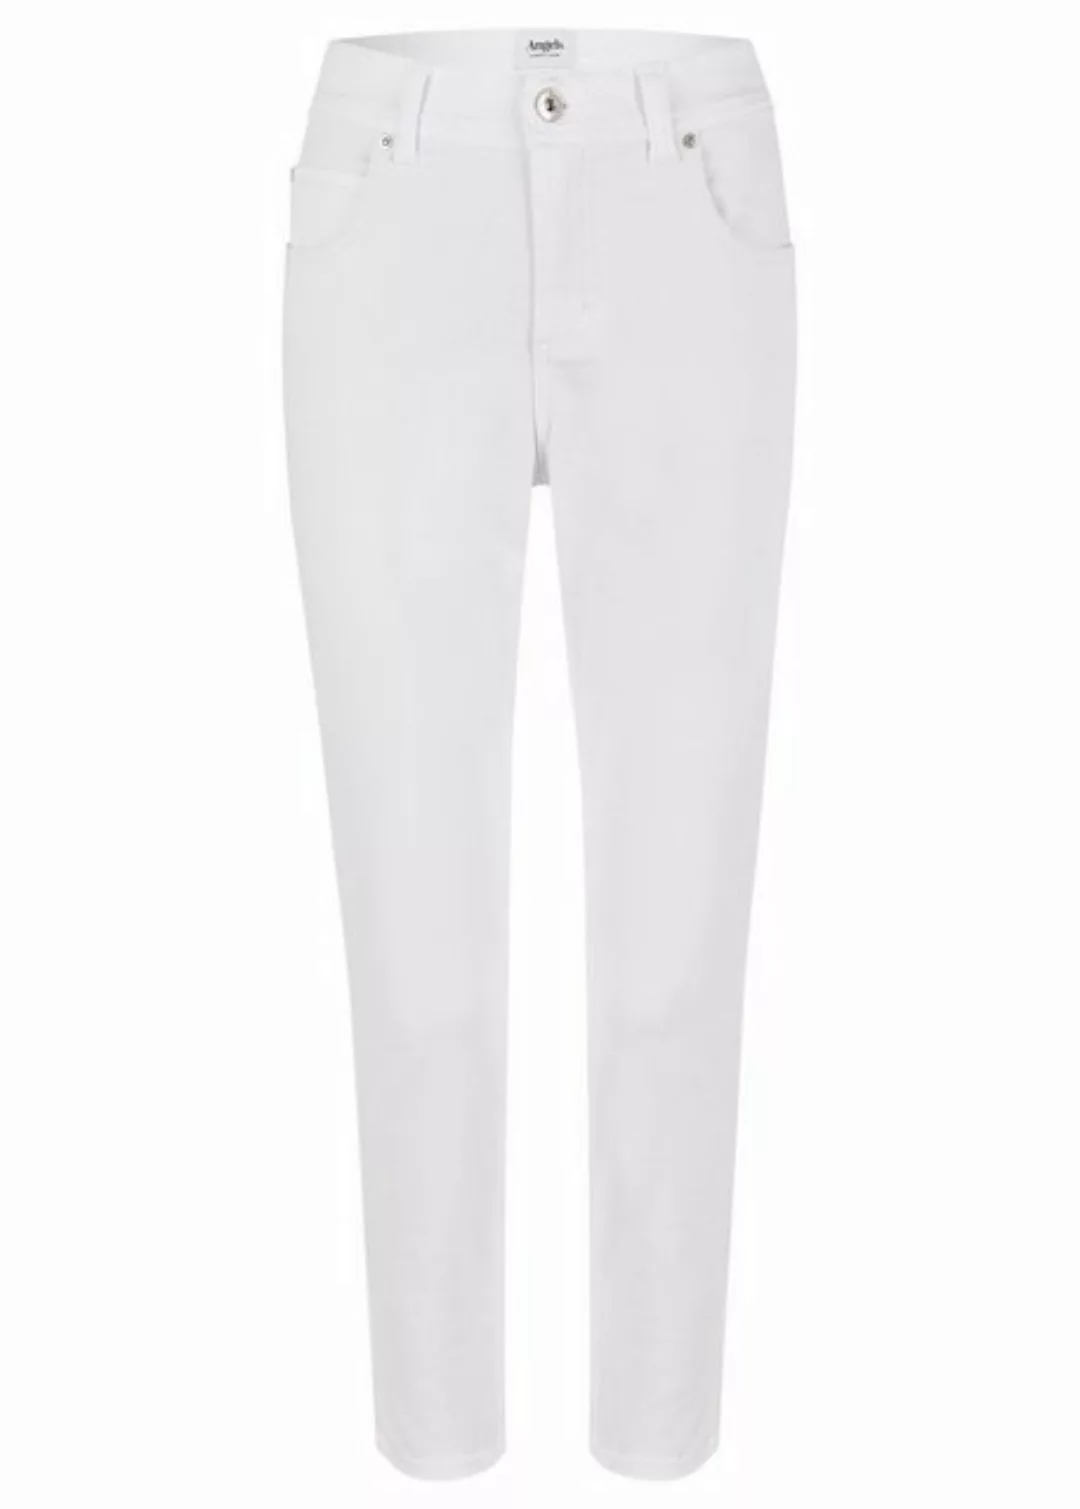 ANGELS Stretch-Jeans ANGELS JEANS ORNELLA white 332 680007.70 günstig online kaufen